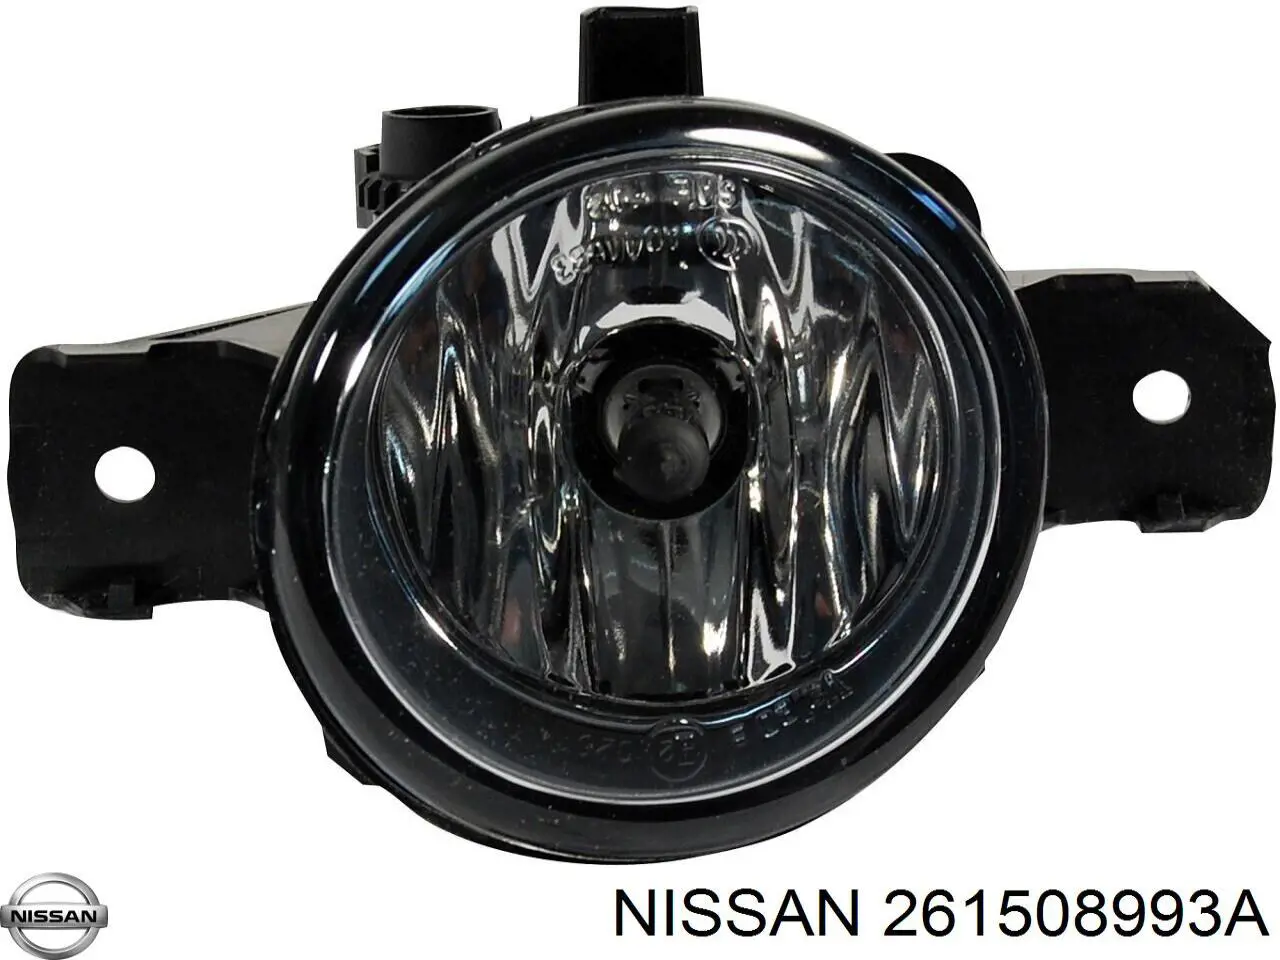 261508993A Nissan luzes de nevoeiro esquerdas